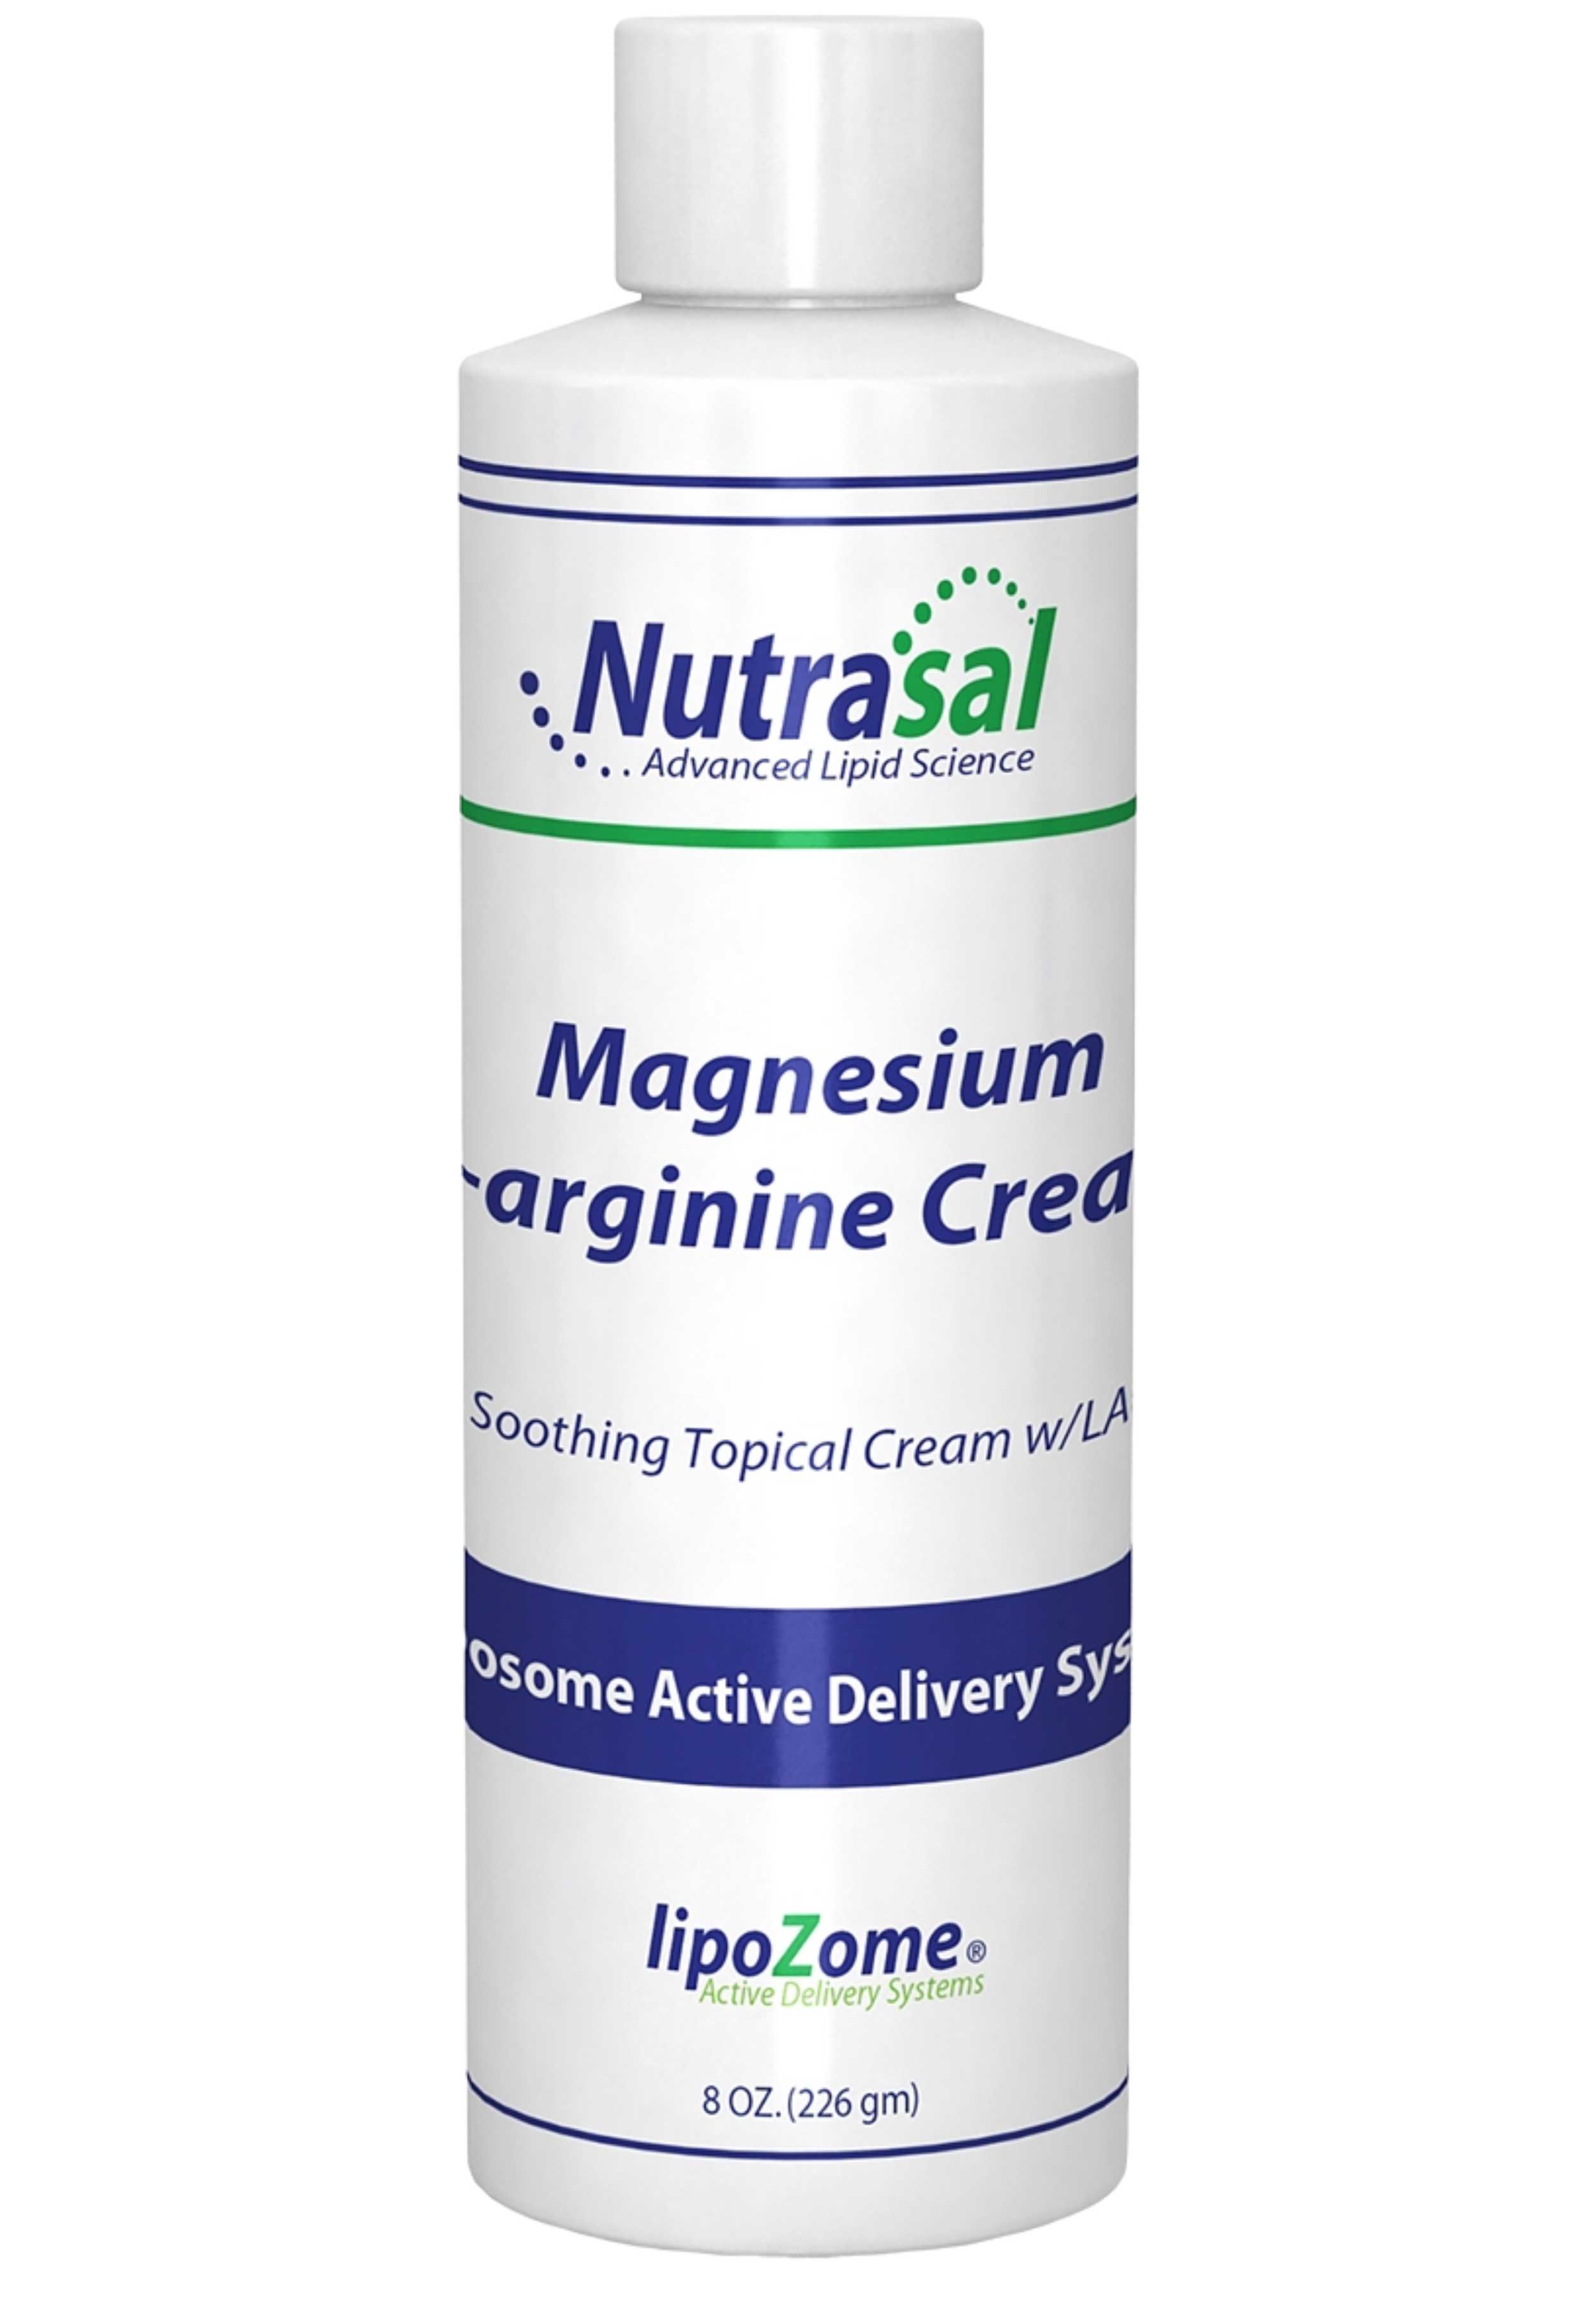 Nutrasal Magnesium and L-arginine Cream 